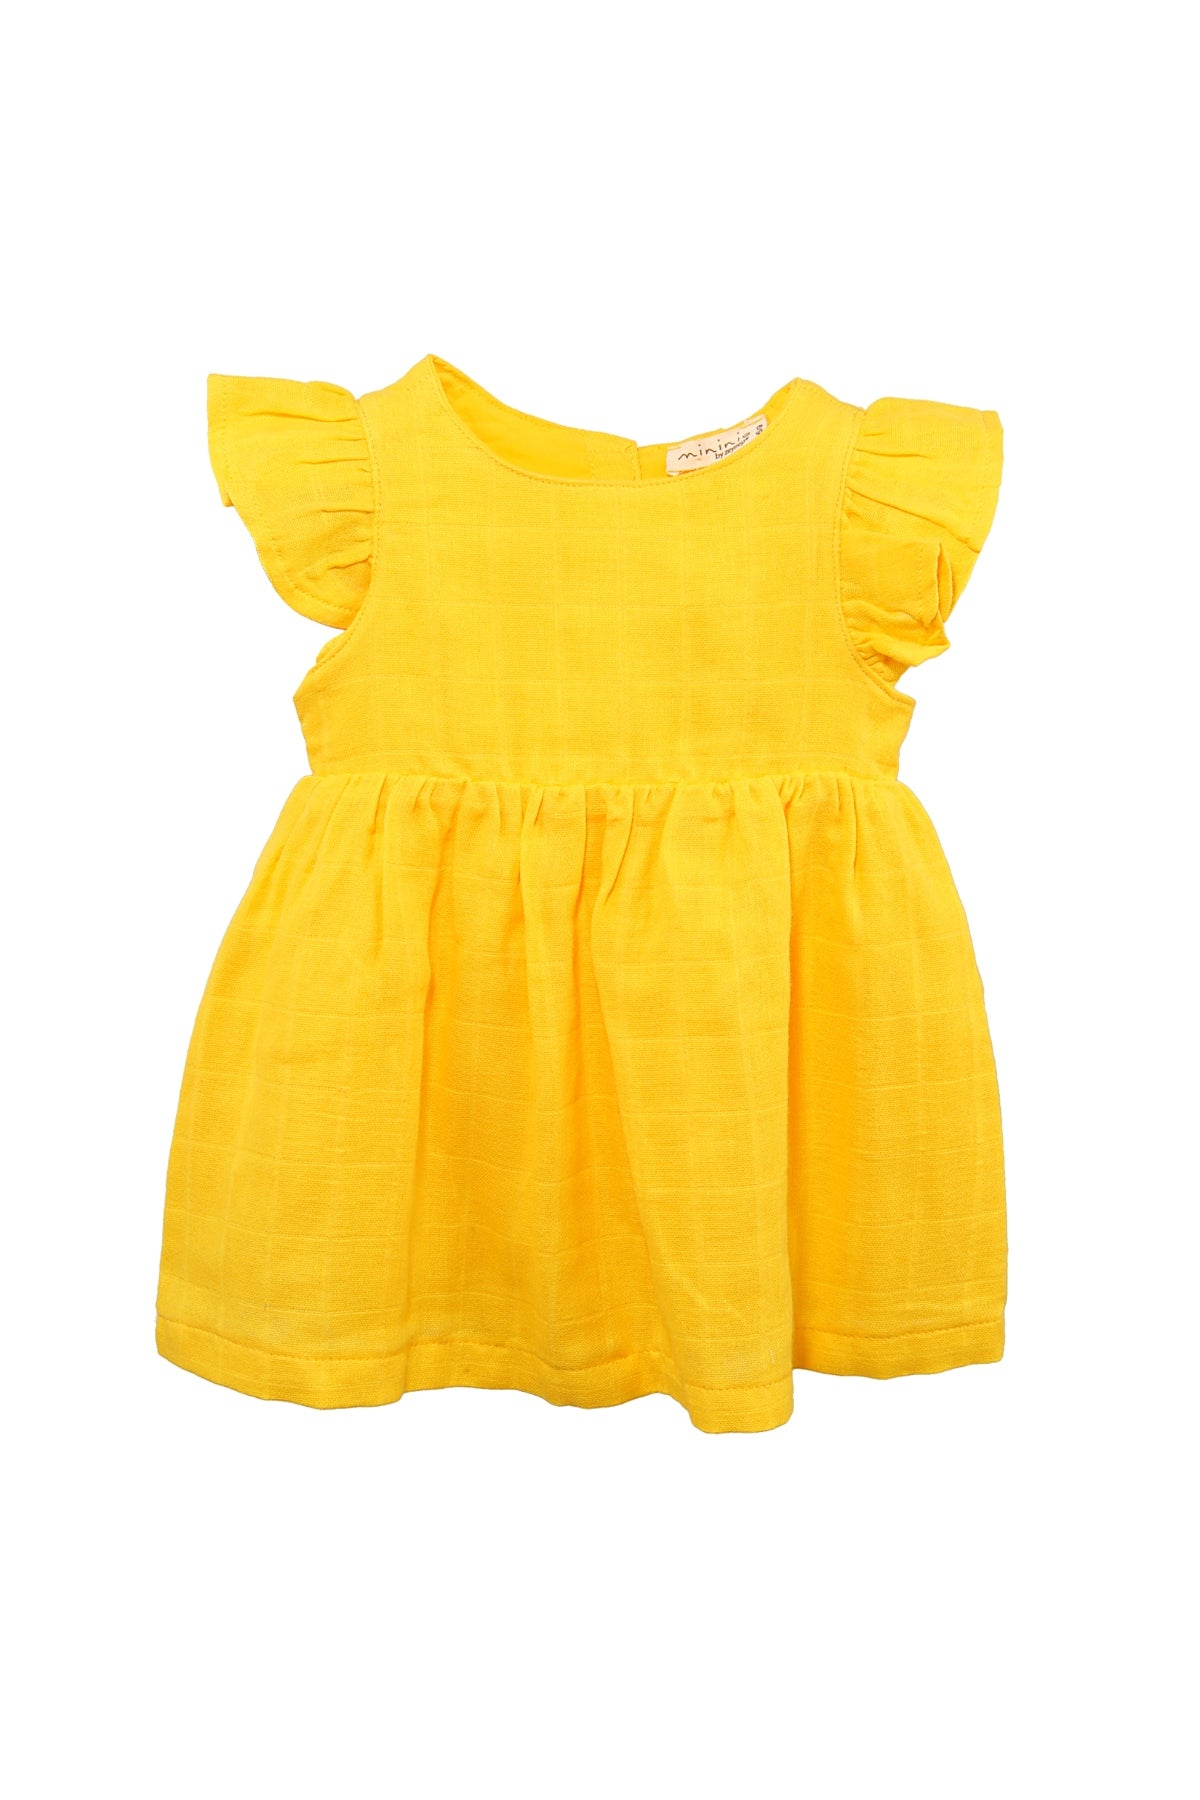 Kız Bebek Keten Kolları Fırfırlı Elbise (6ay-4yaş)-2